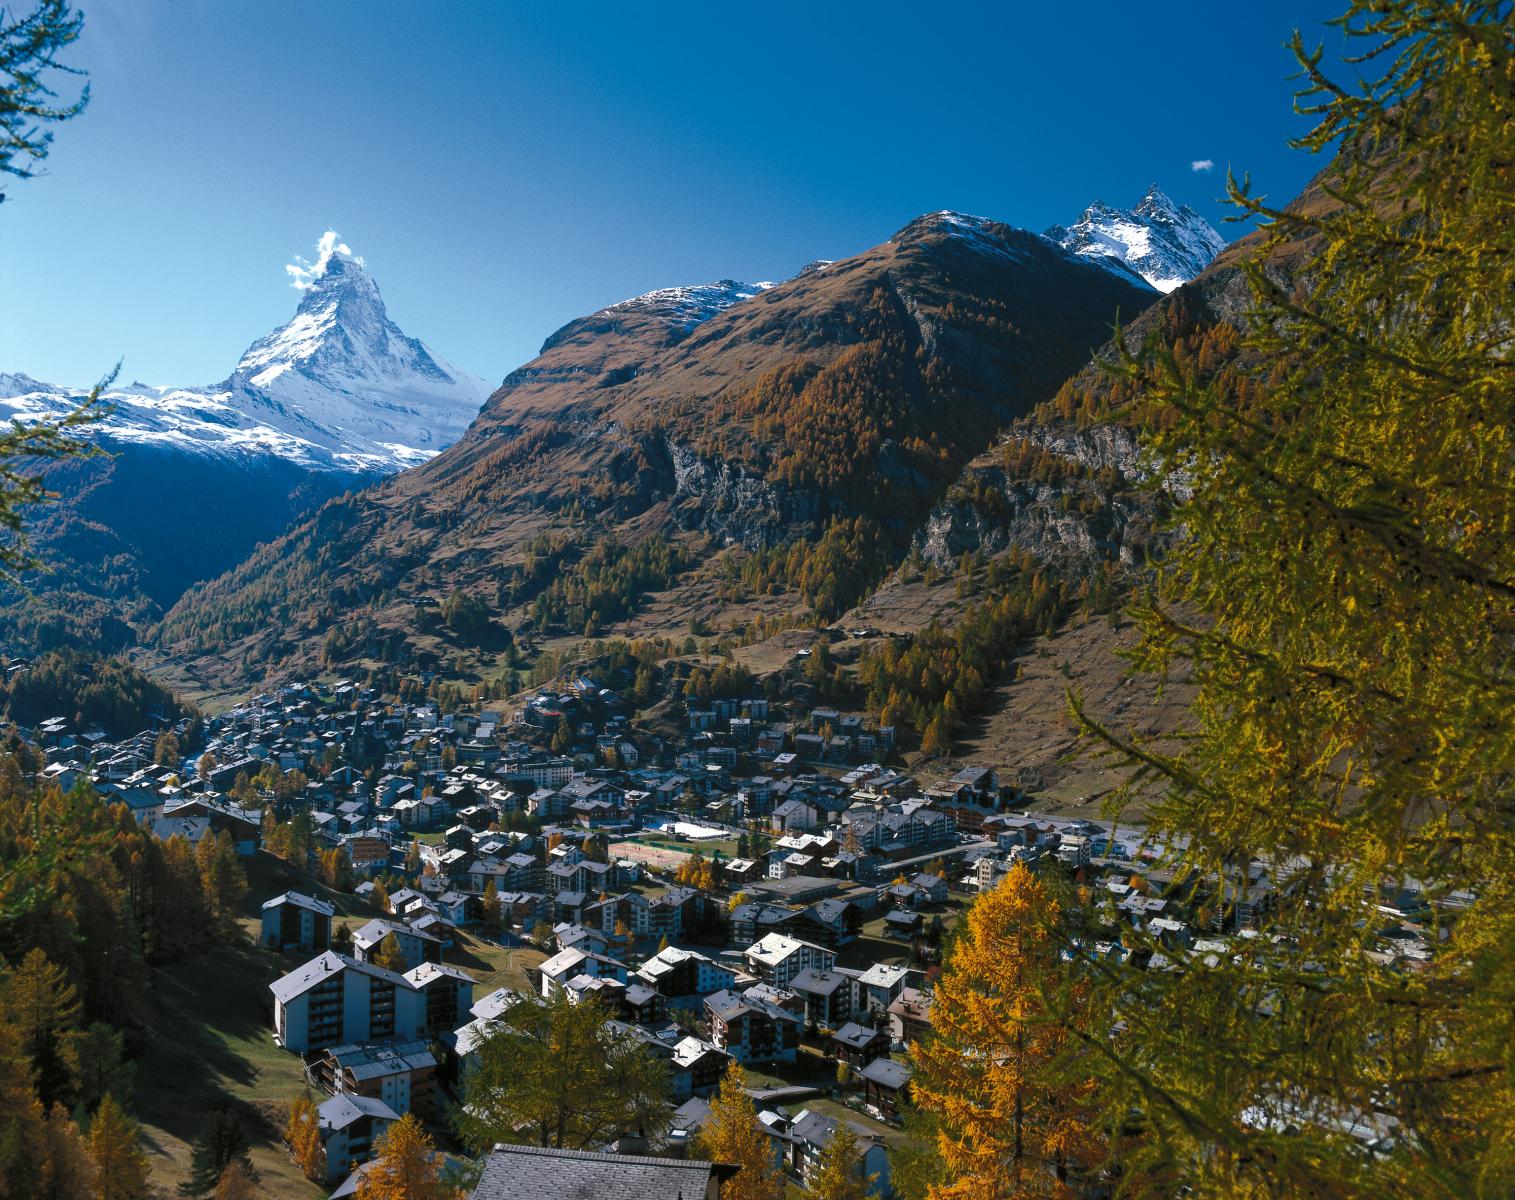 The Matterhorn Zermatt